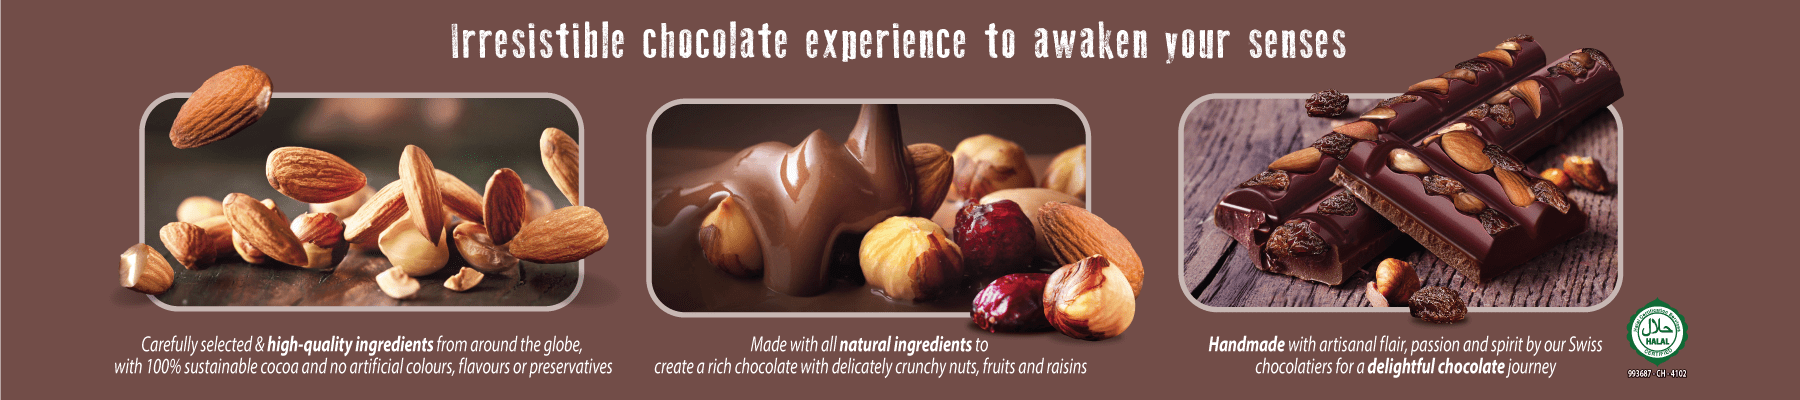 Irresistible chocolate experience to awaken your senses